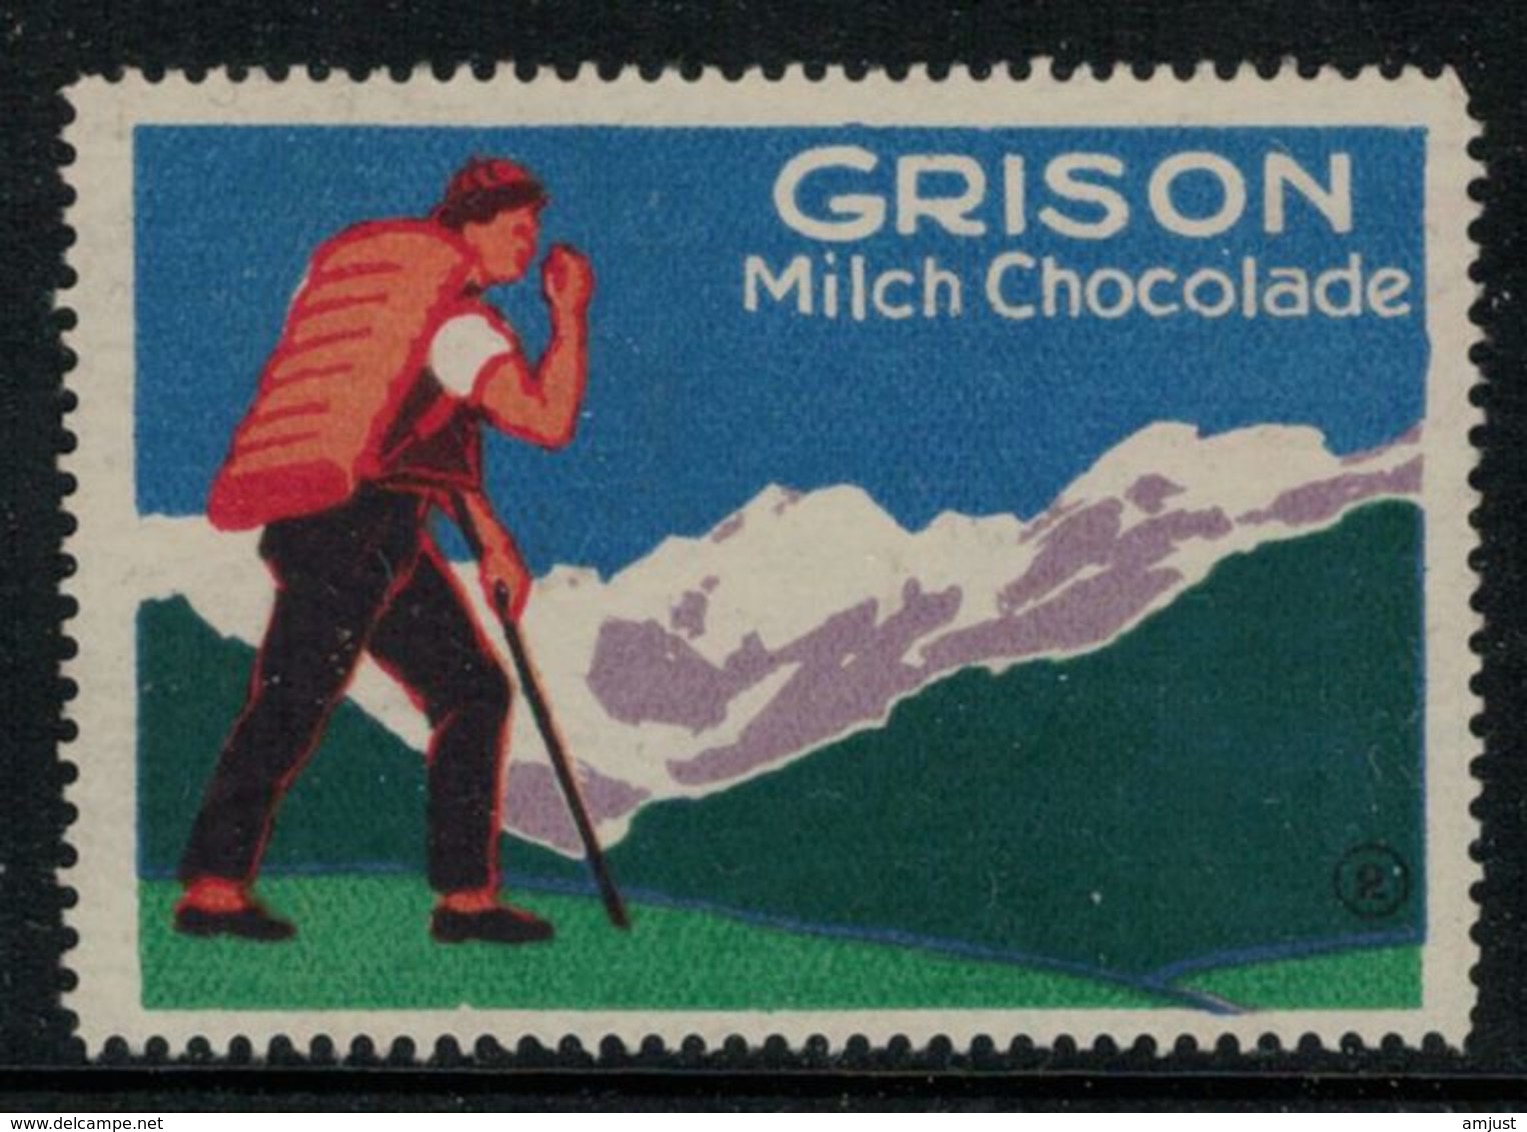 Suisse // Schweiz // Switzerland // Erinnophilie  //  Vignette Publicitaire "Grison Milch Chocolade" - Erinnophilie